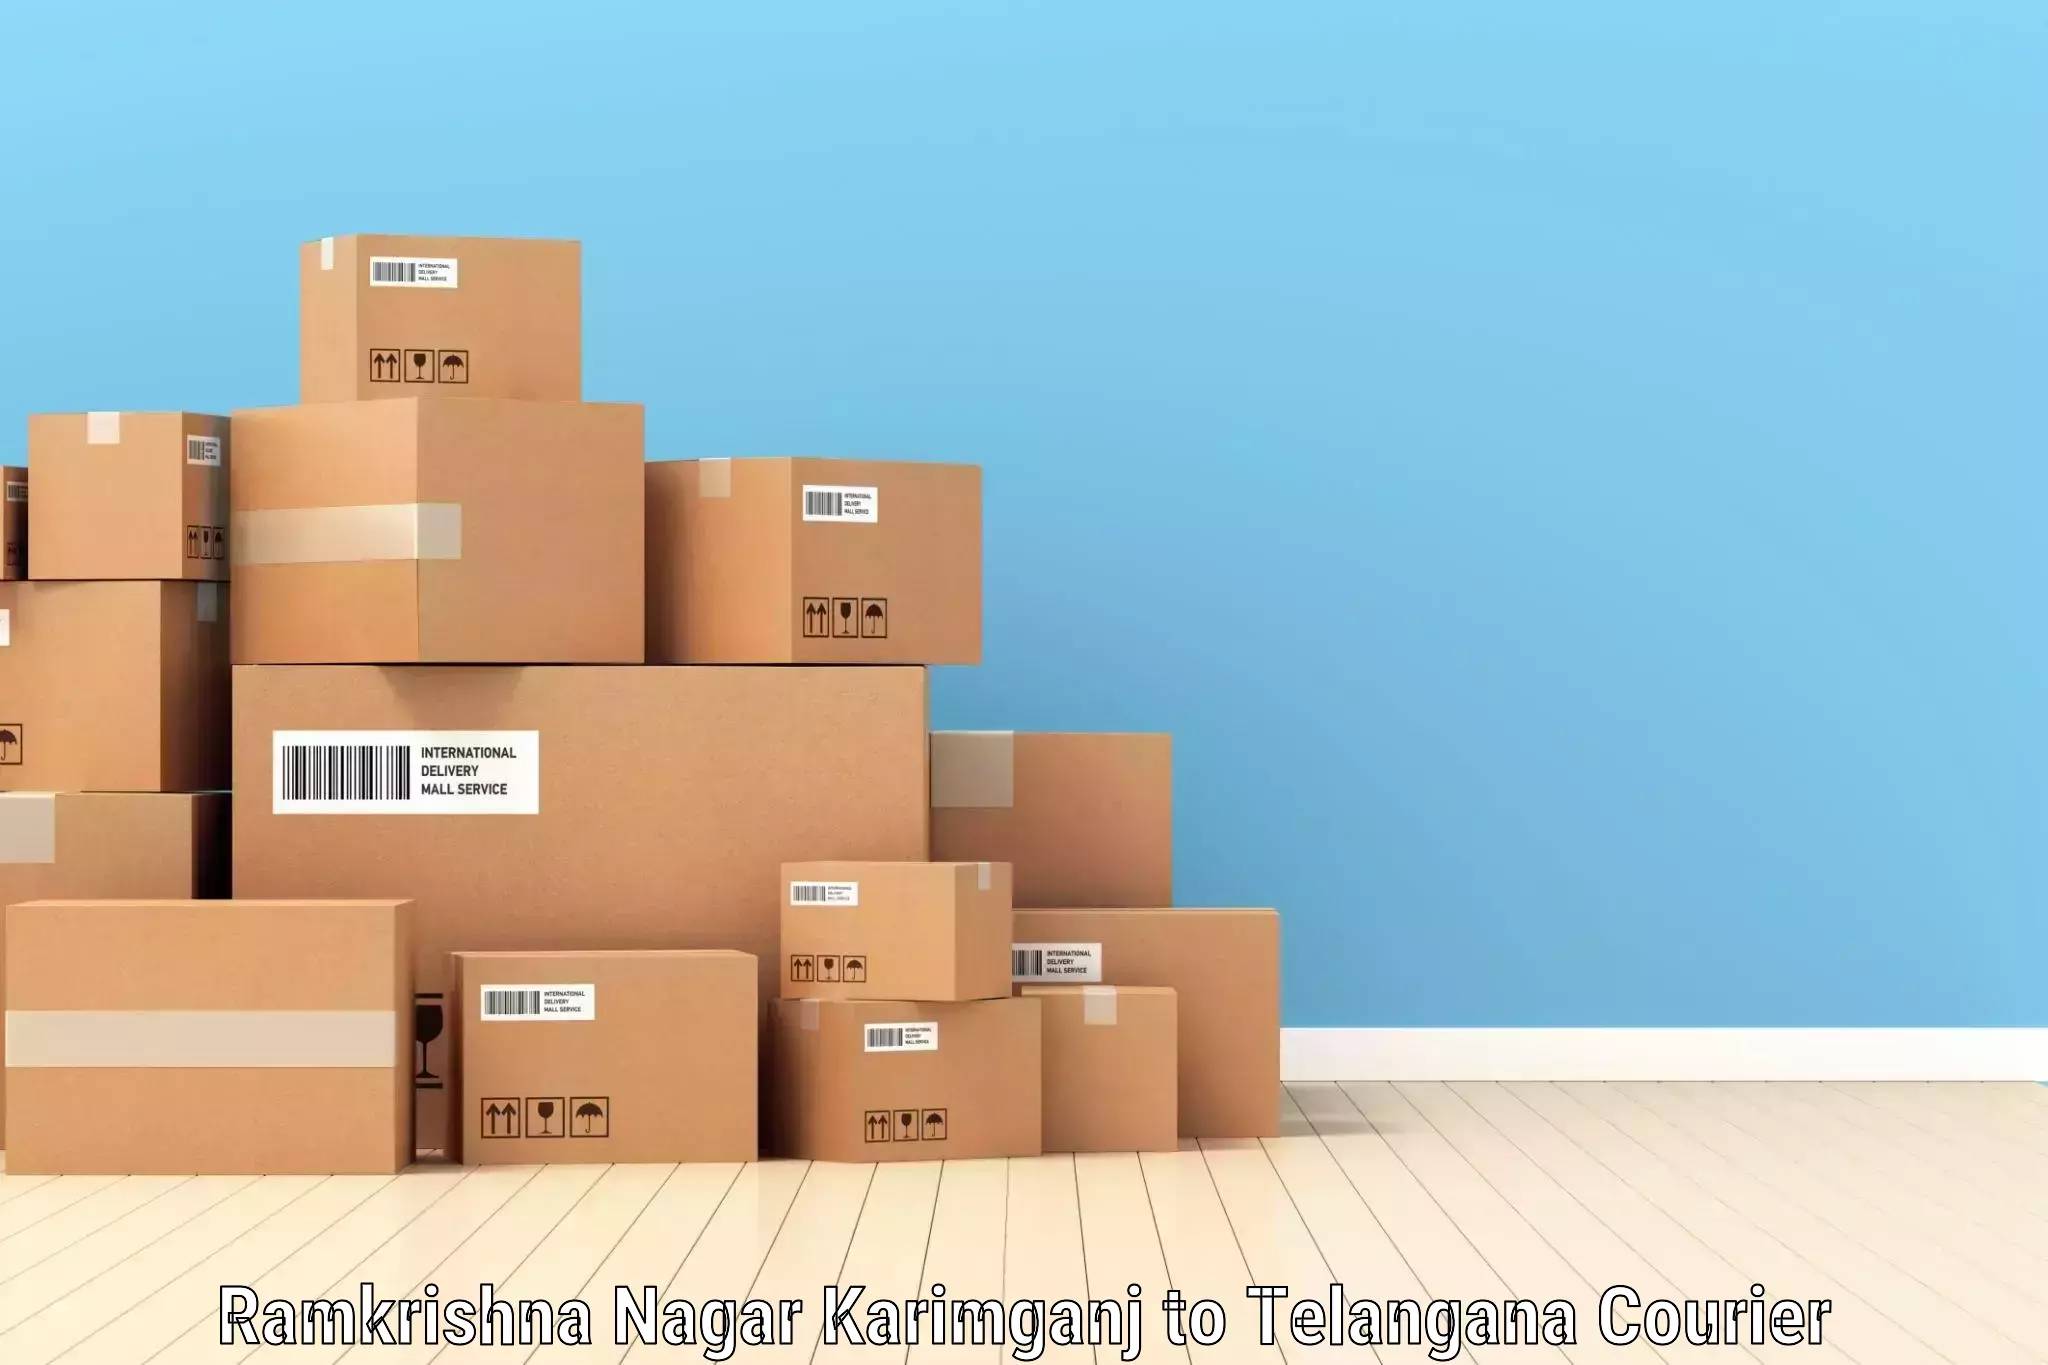 Large package courier in Ramkrishna Nagar Karimganj to Kothakota